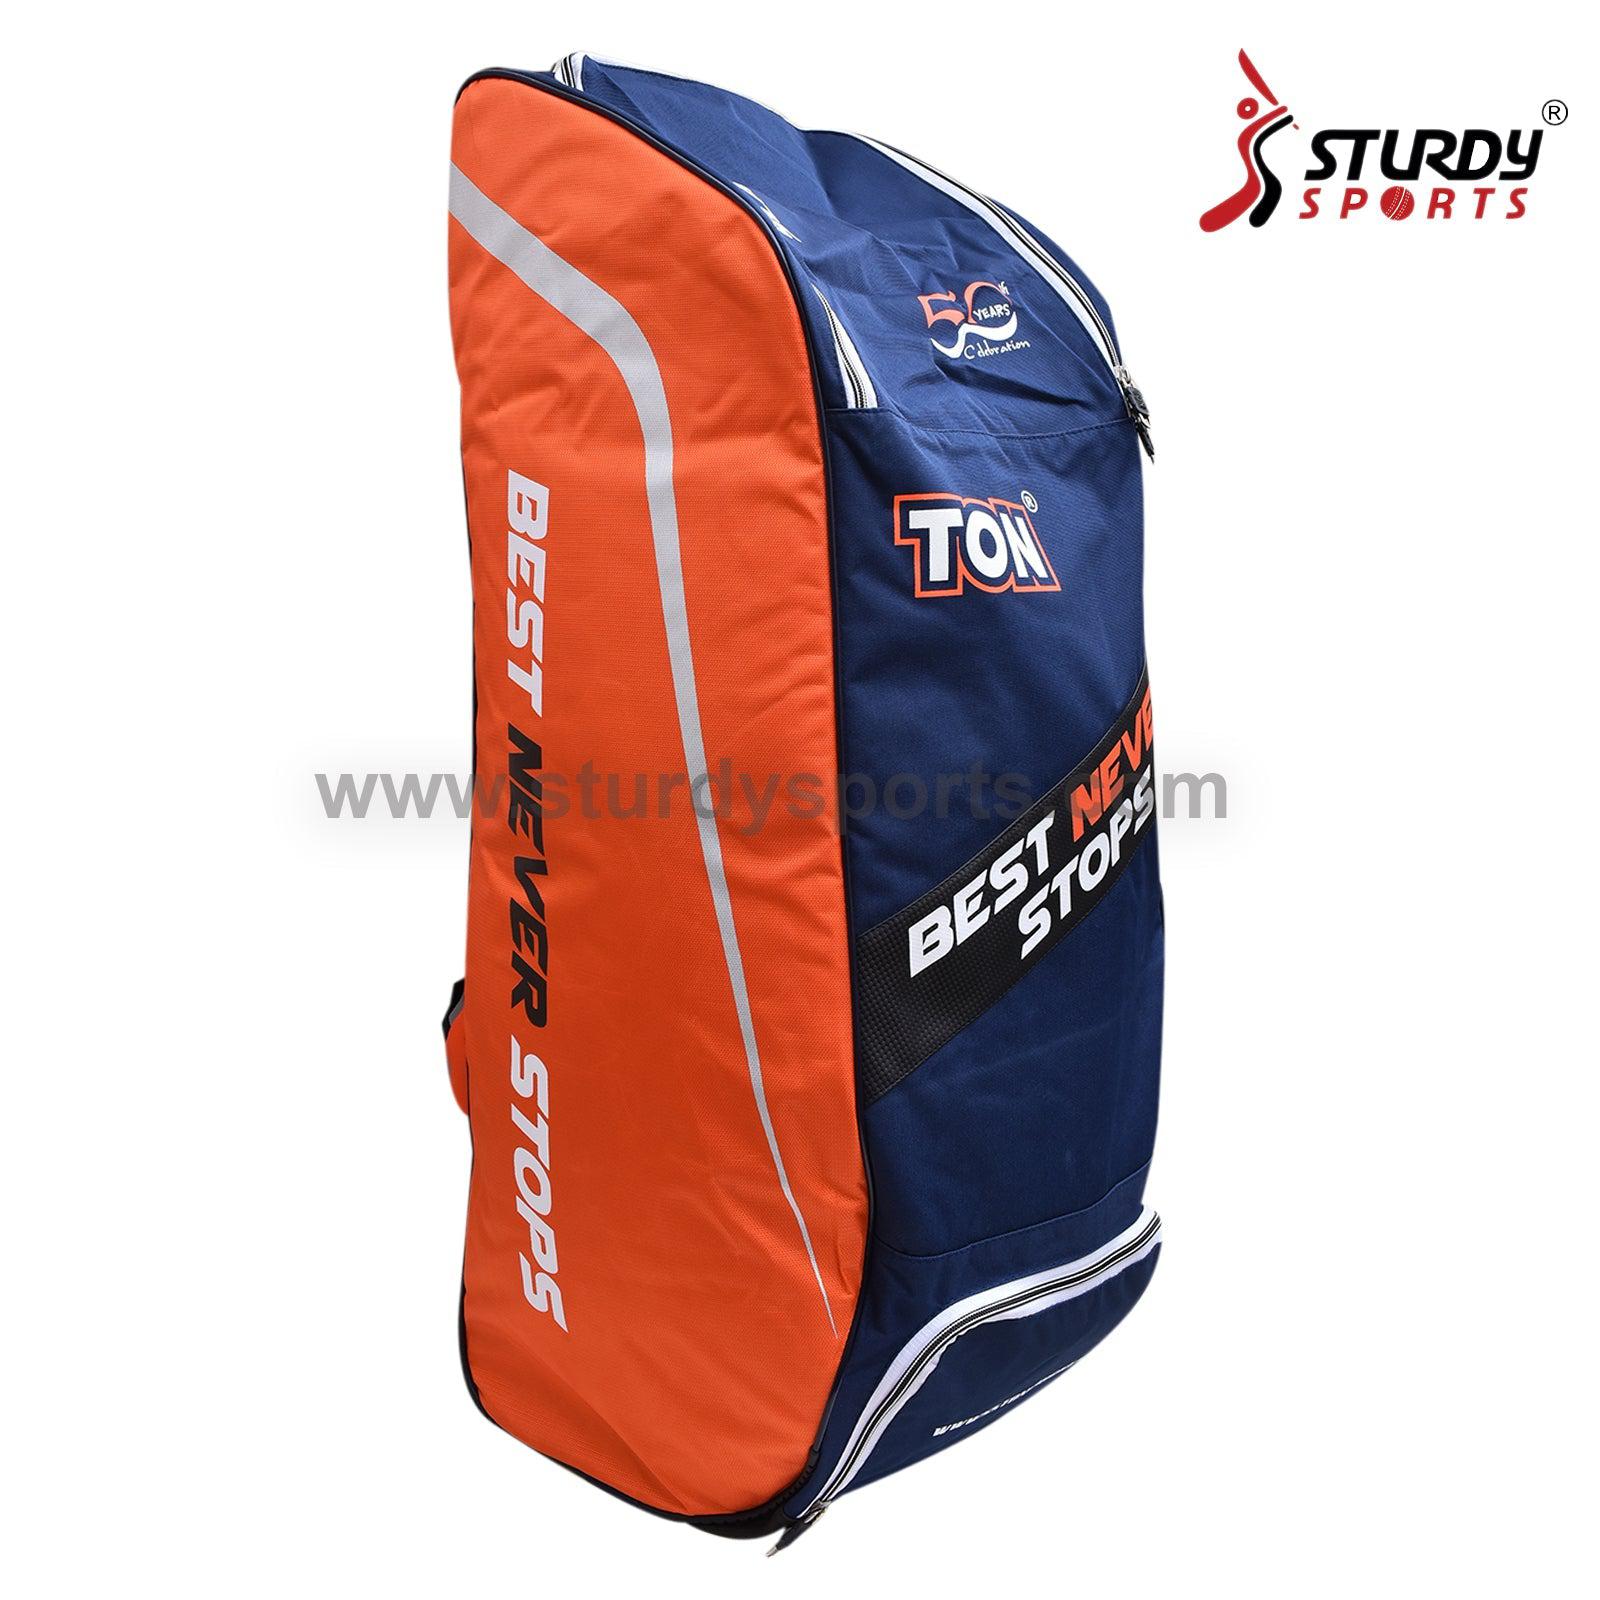 TON Slasher Duffle Cricket Kit Bag